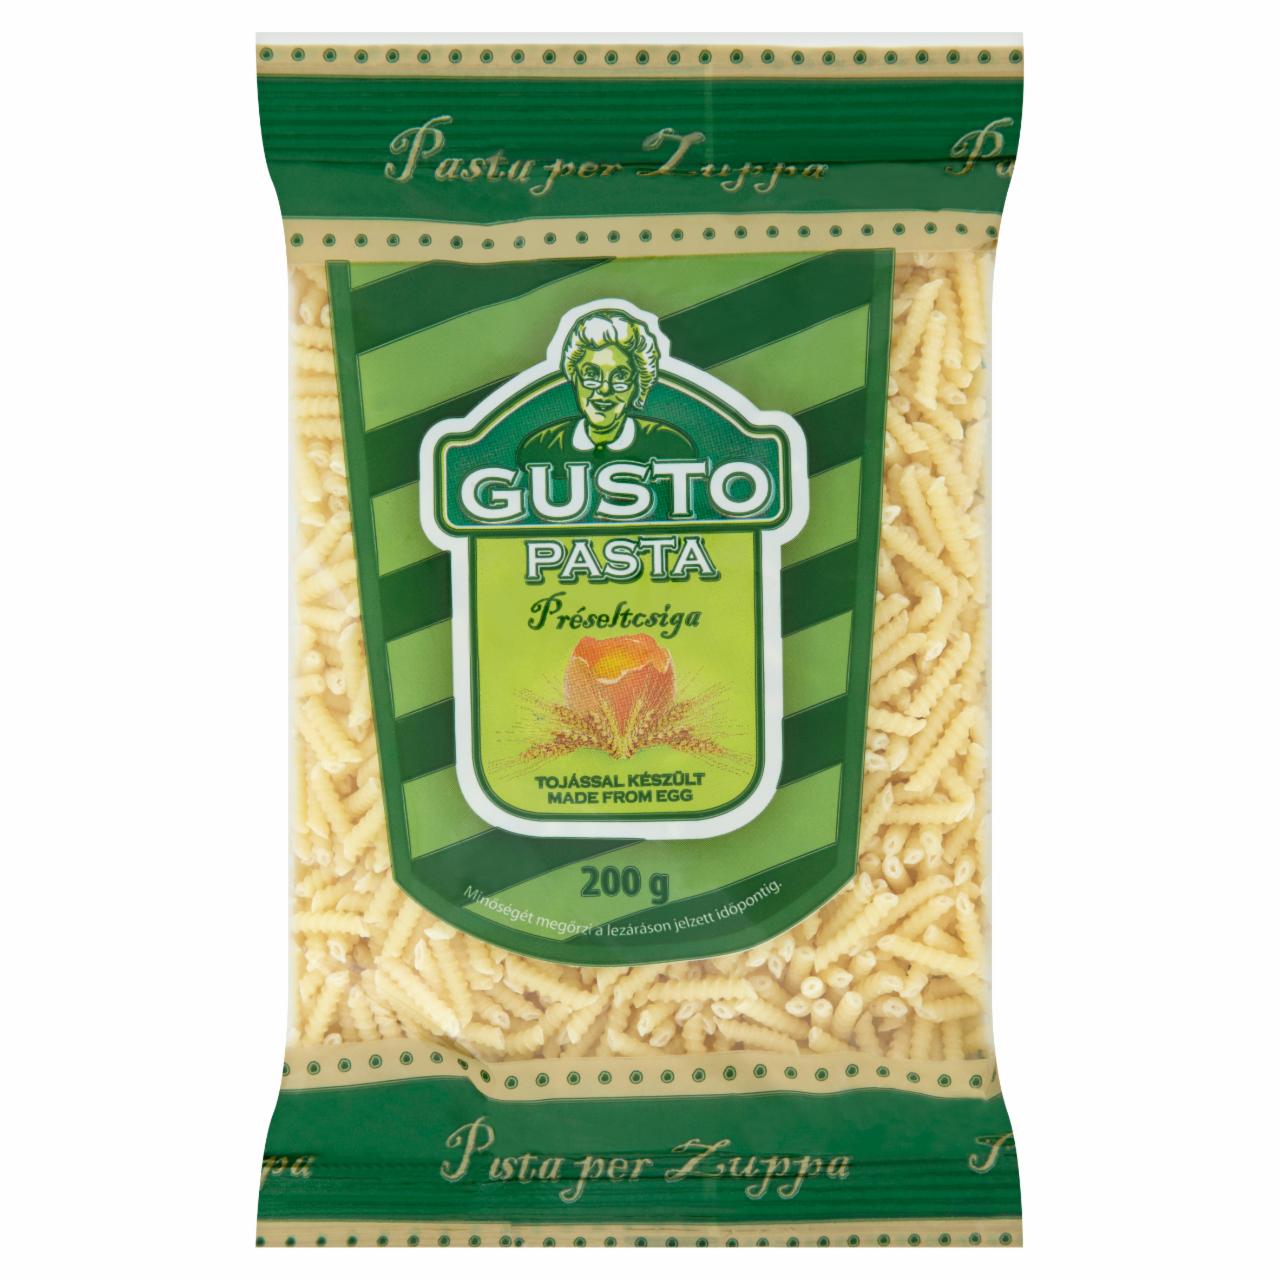 Képek - Gusto Pasta préseltcsiga egytojásos száraztészta 200 g